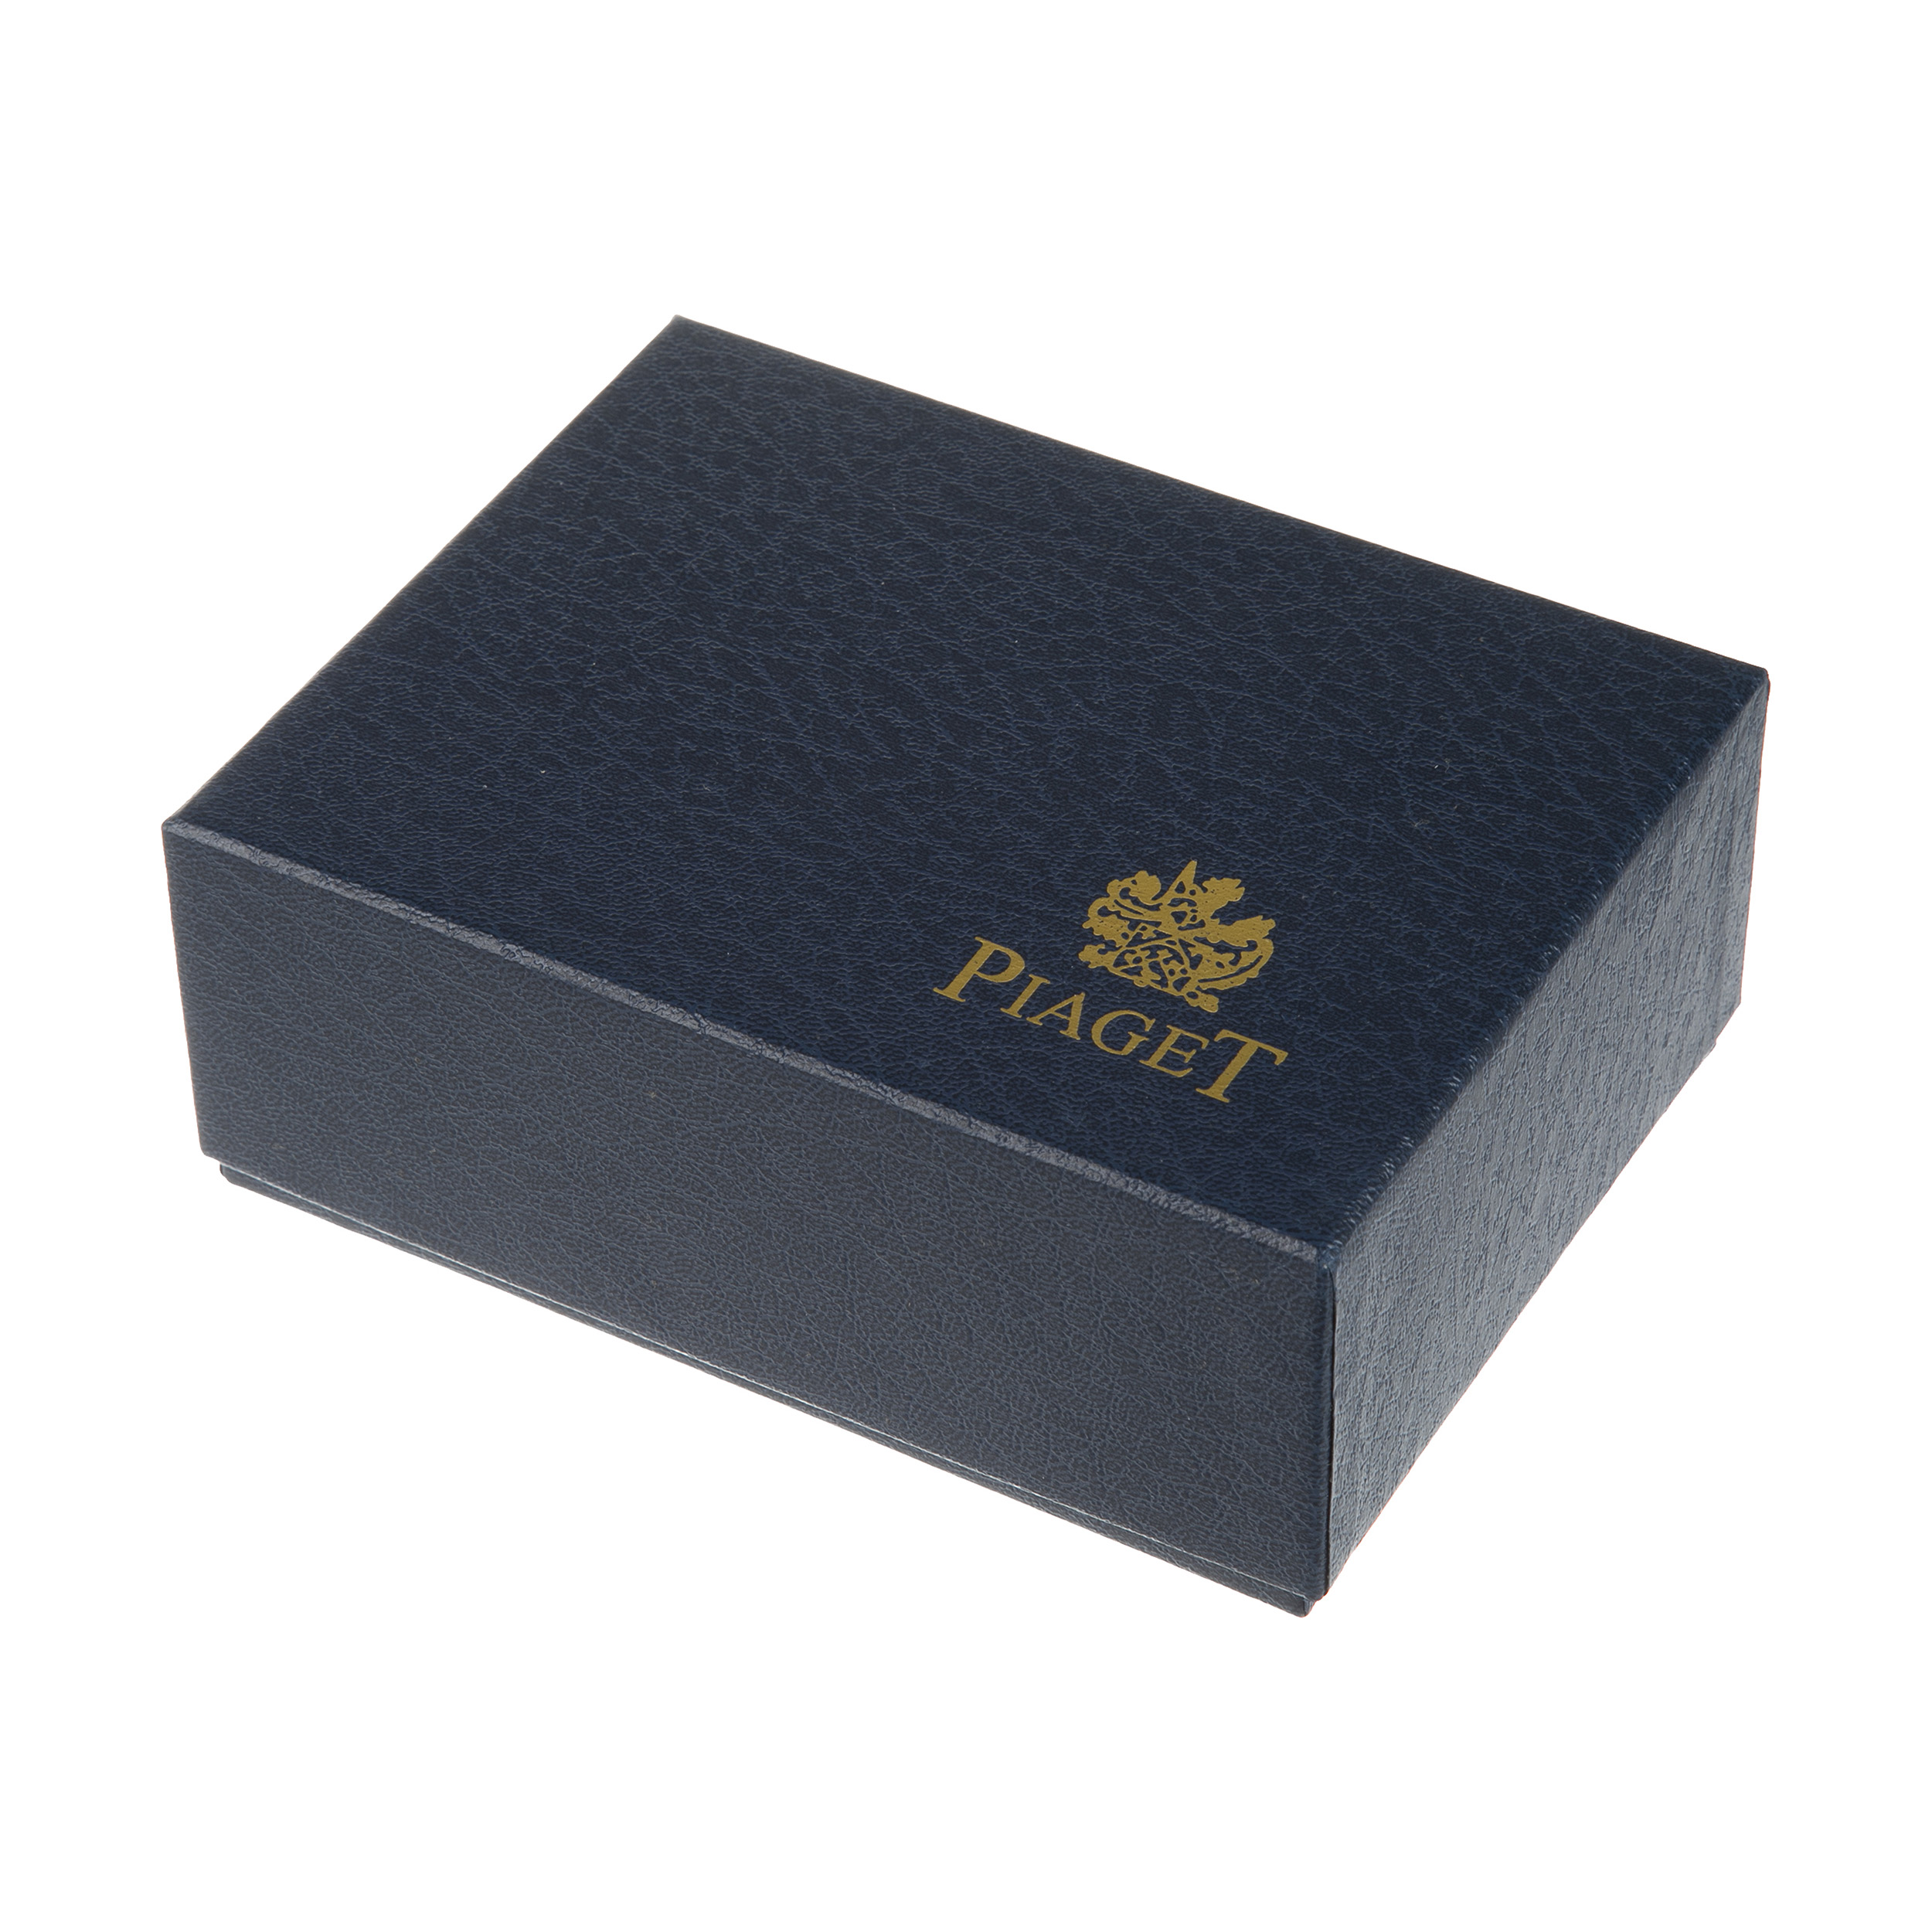 جعبه ساعت مدل Piaget